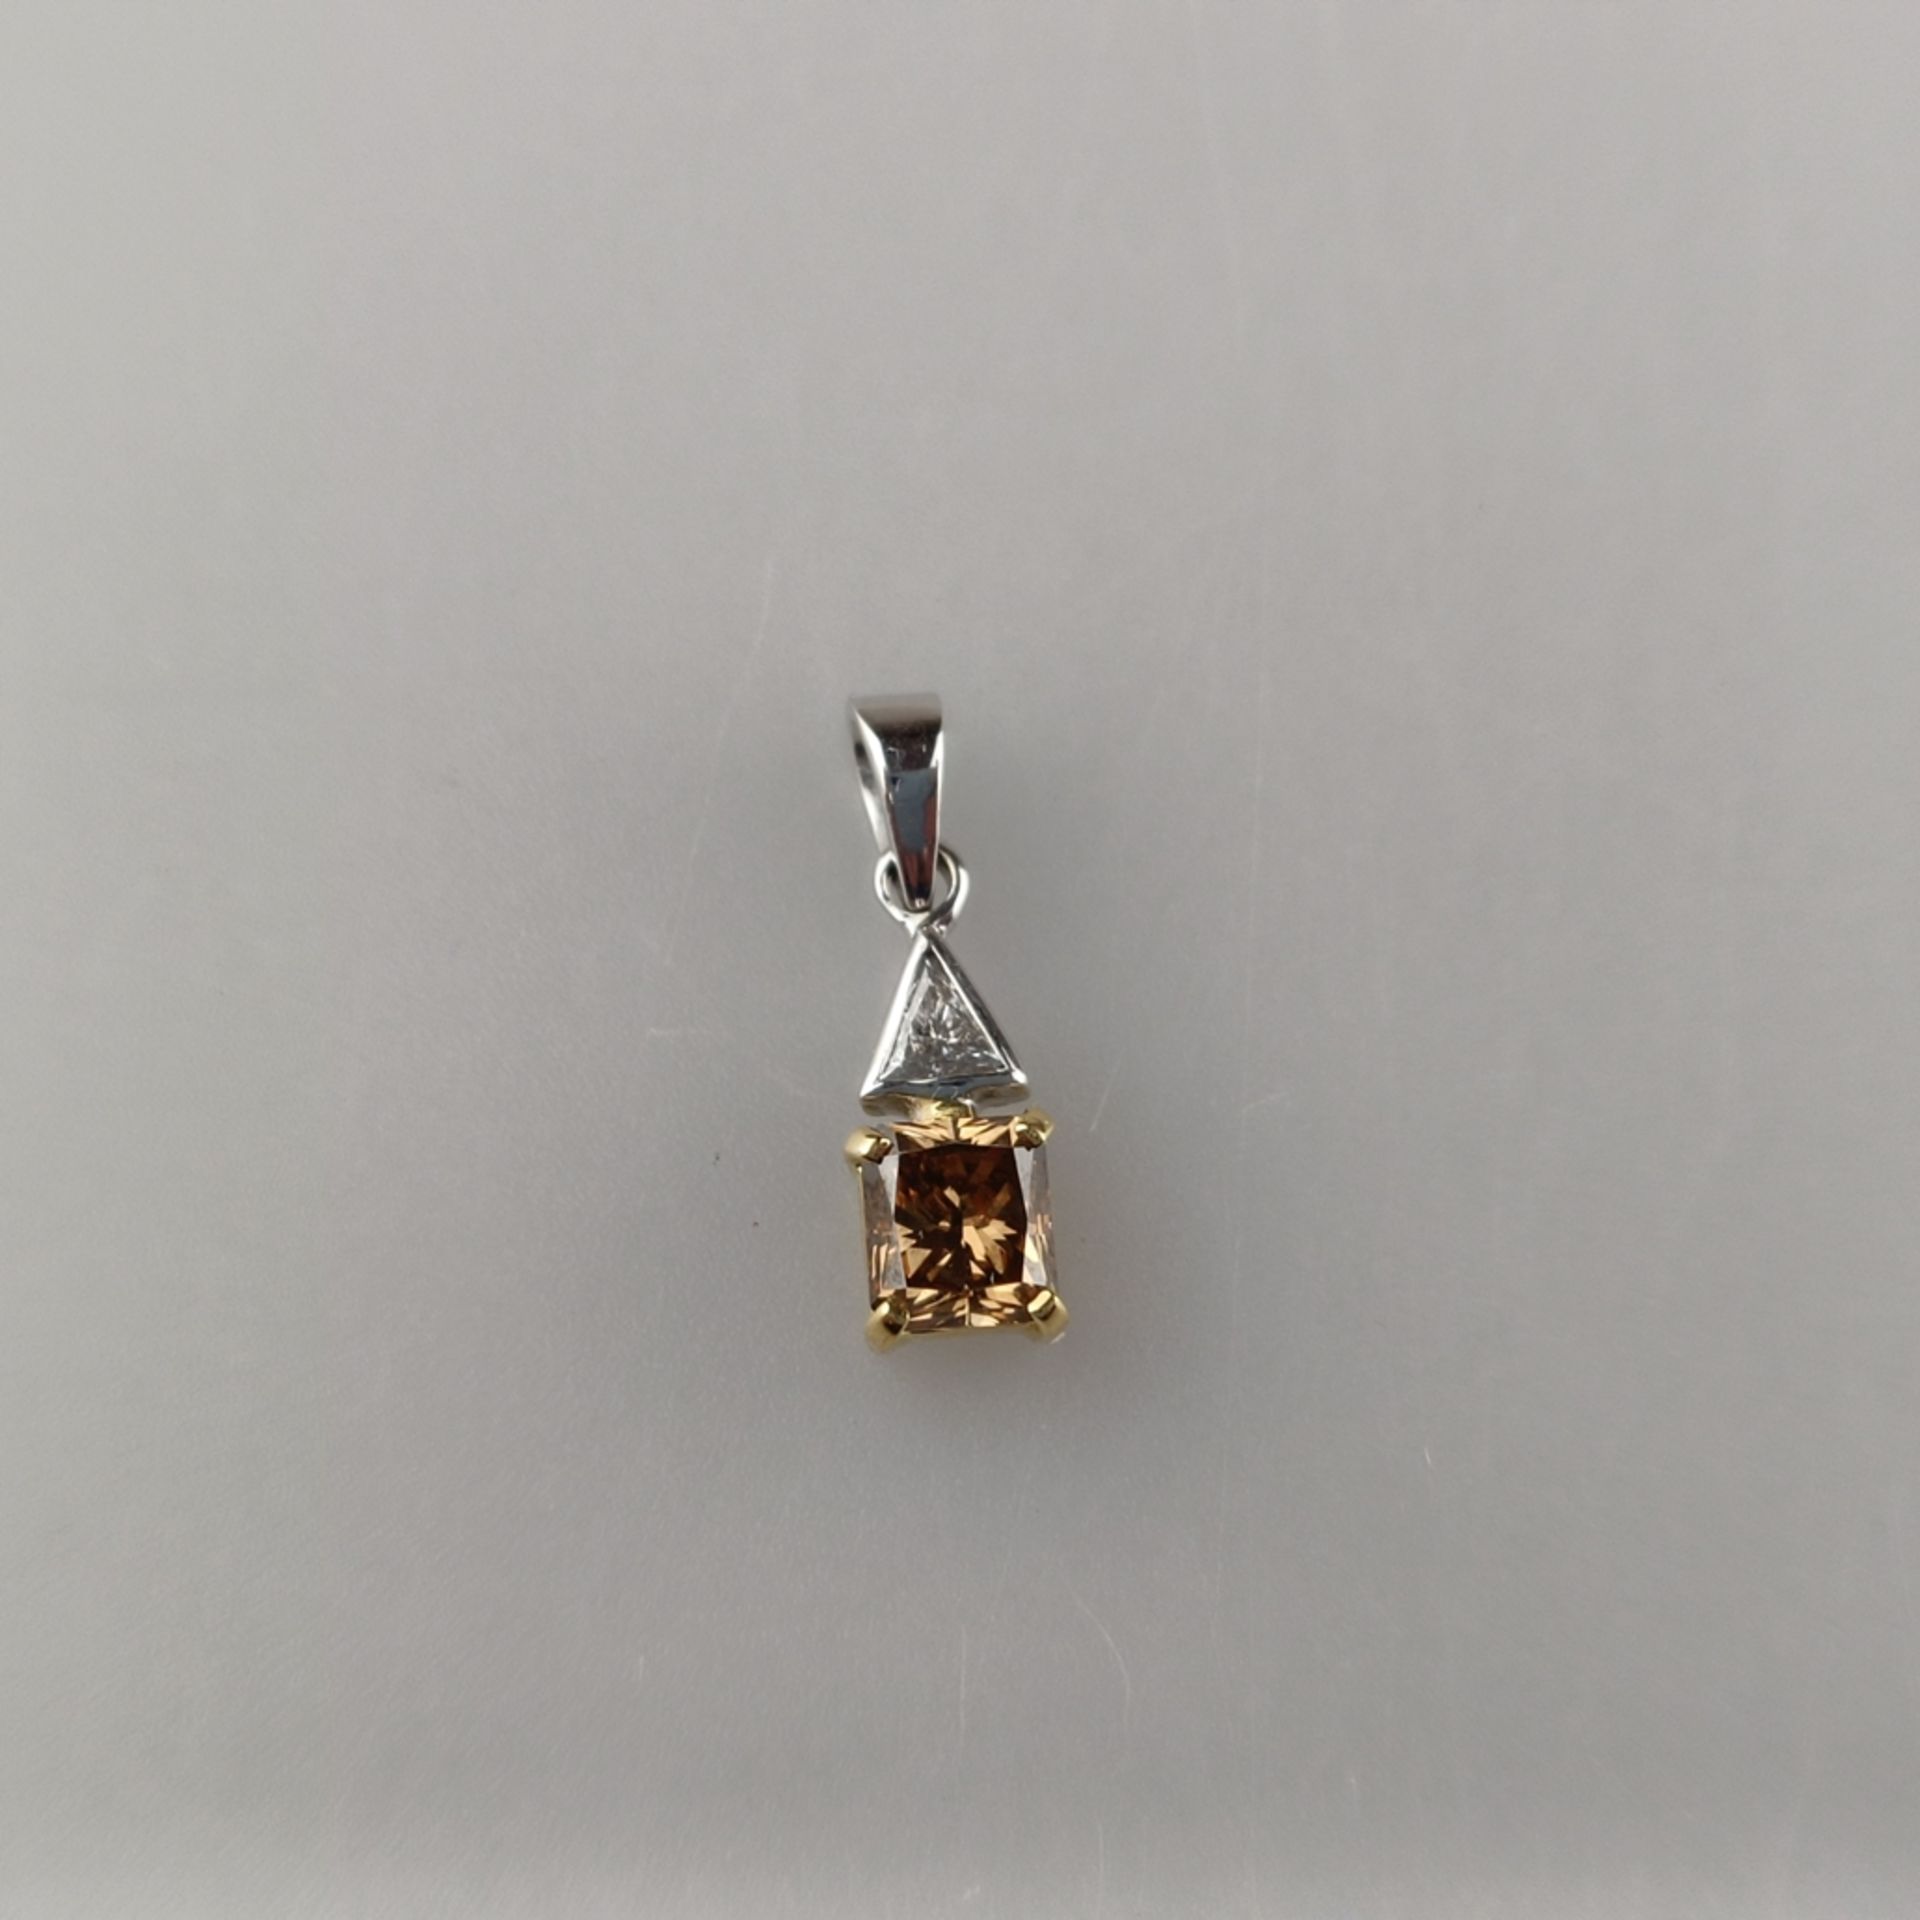 Diamantanhänger von über 1 Karat - Weiß-/ Gelbgold 750/000 (18K), rechteckiger Anhänger besetzt mit - Bild 3 aus 9